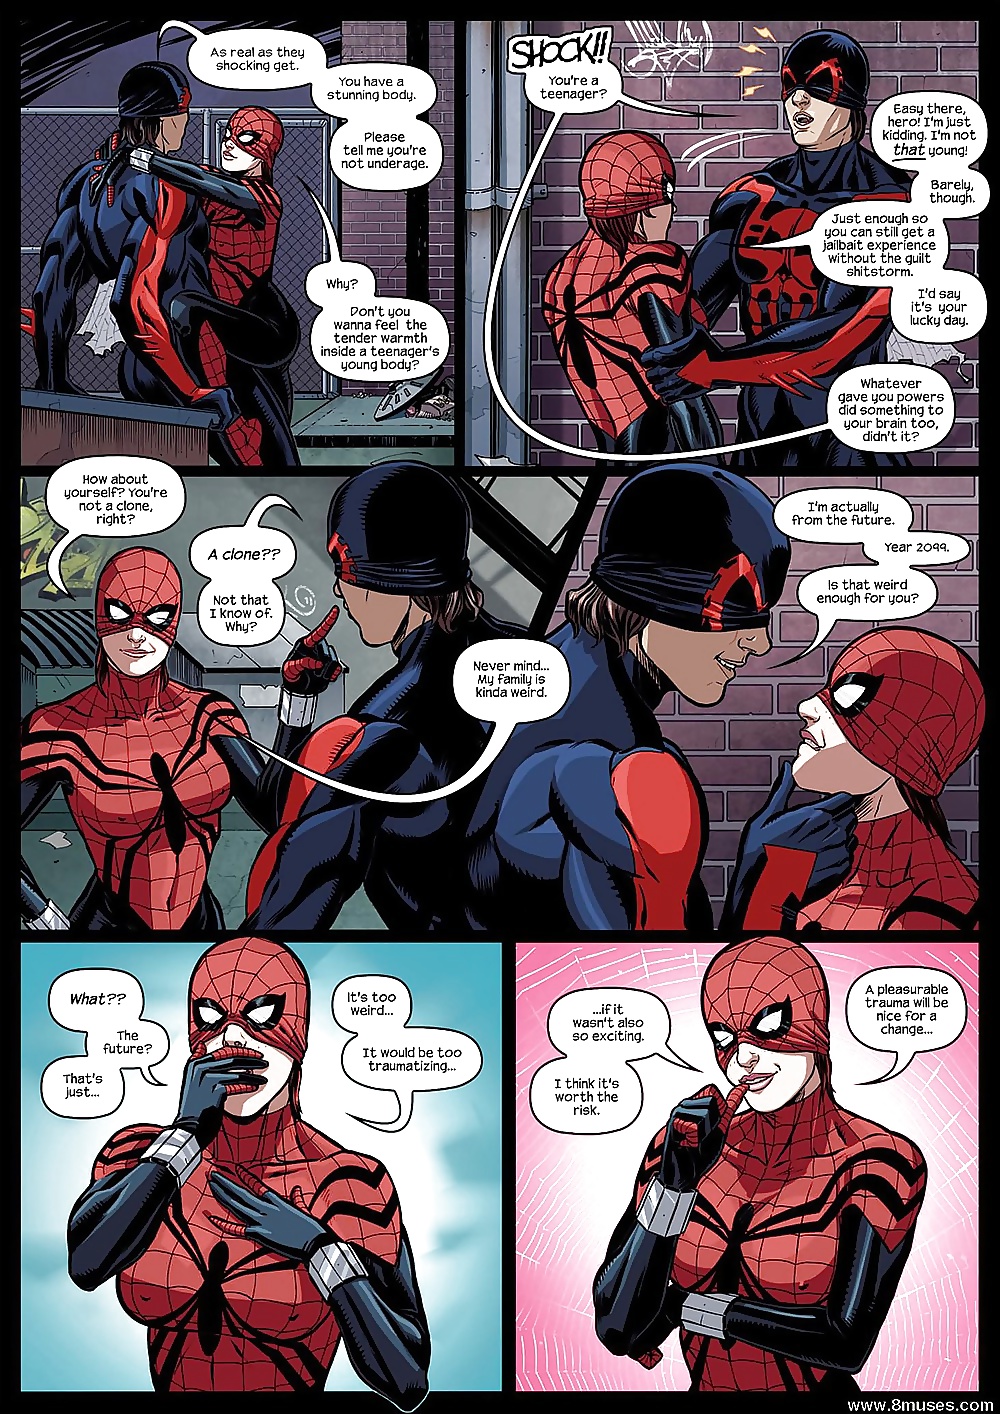 Spider-Man 2099 (4/19)